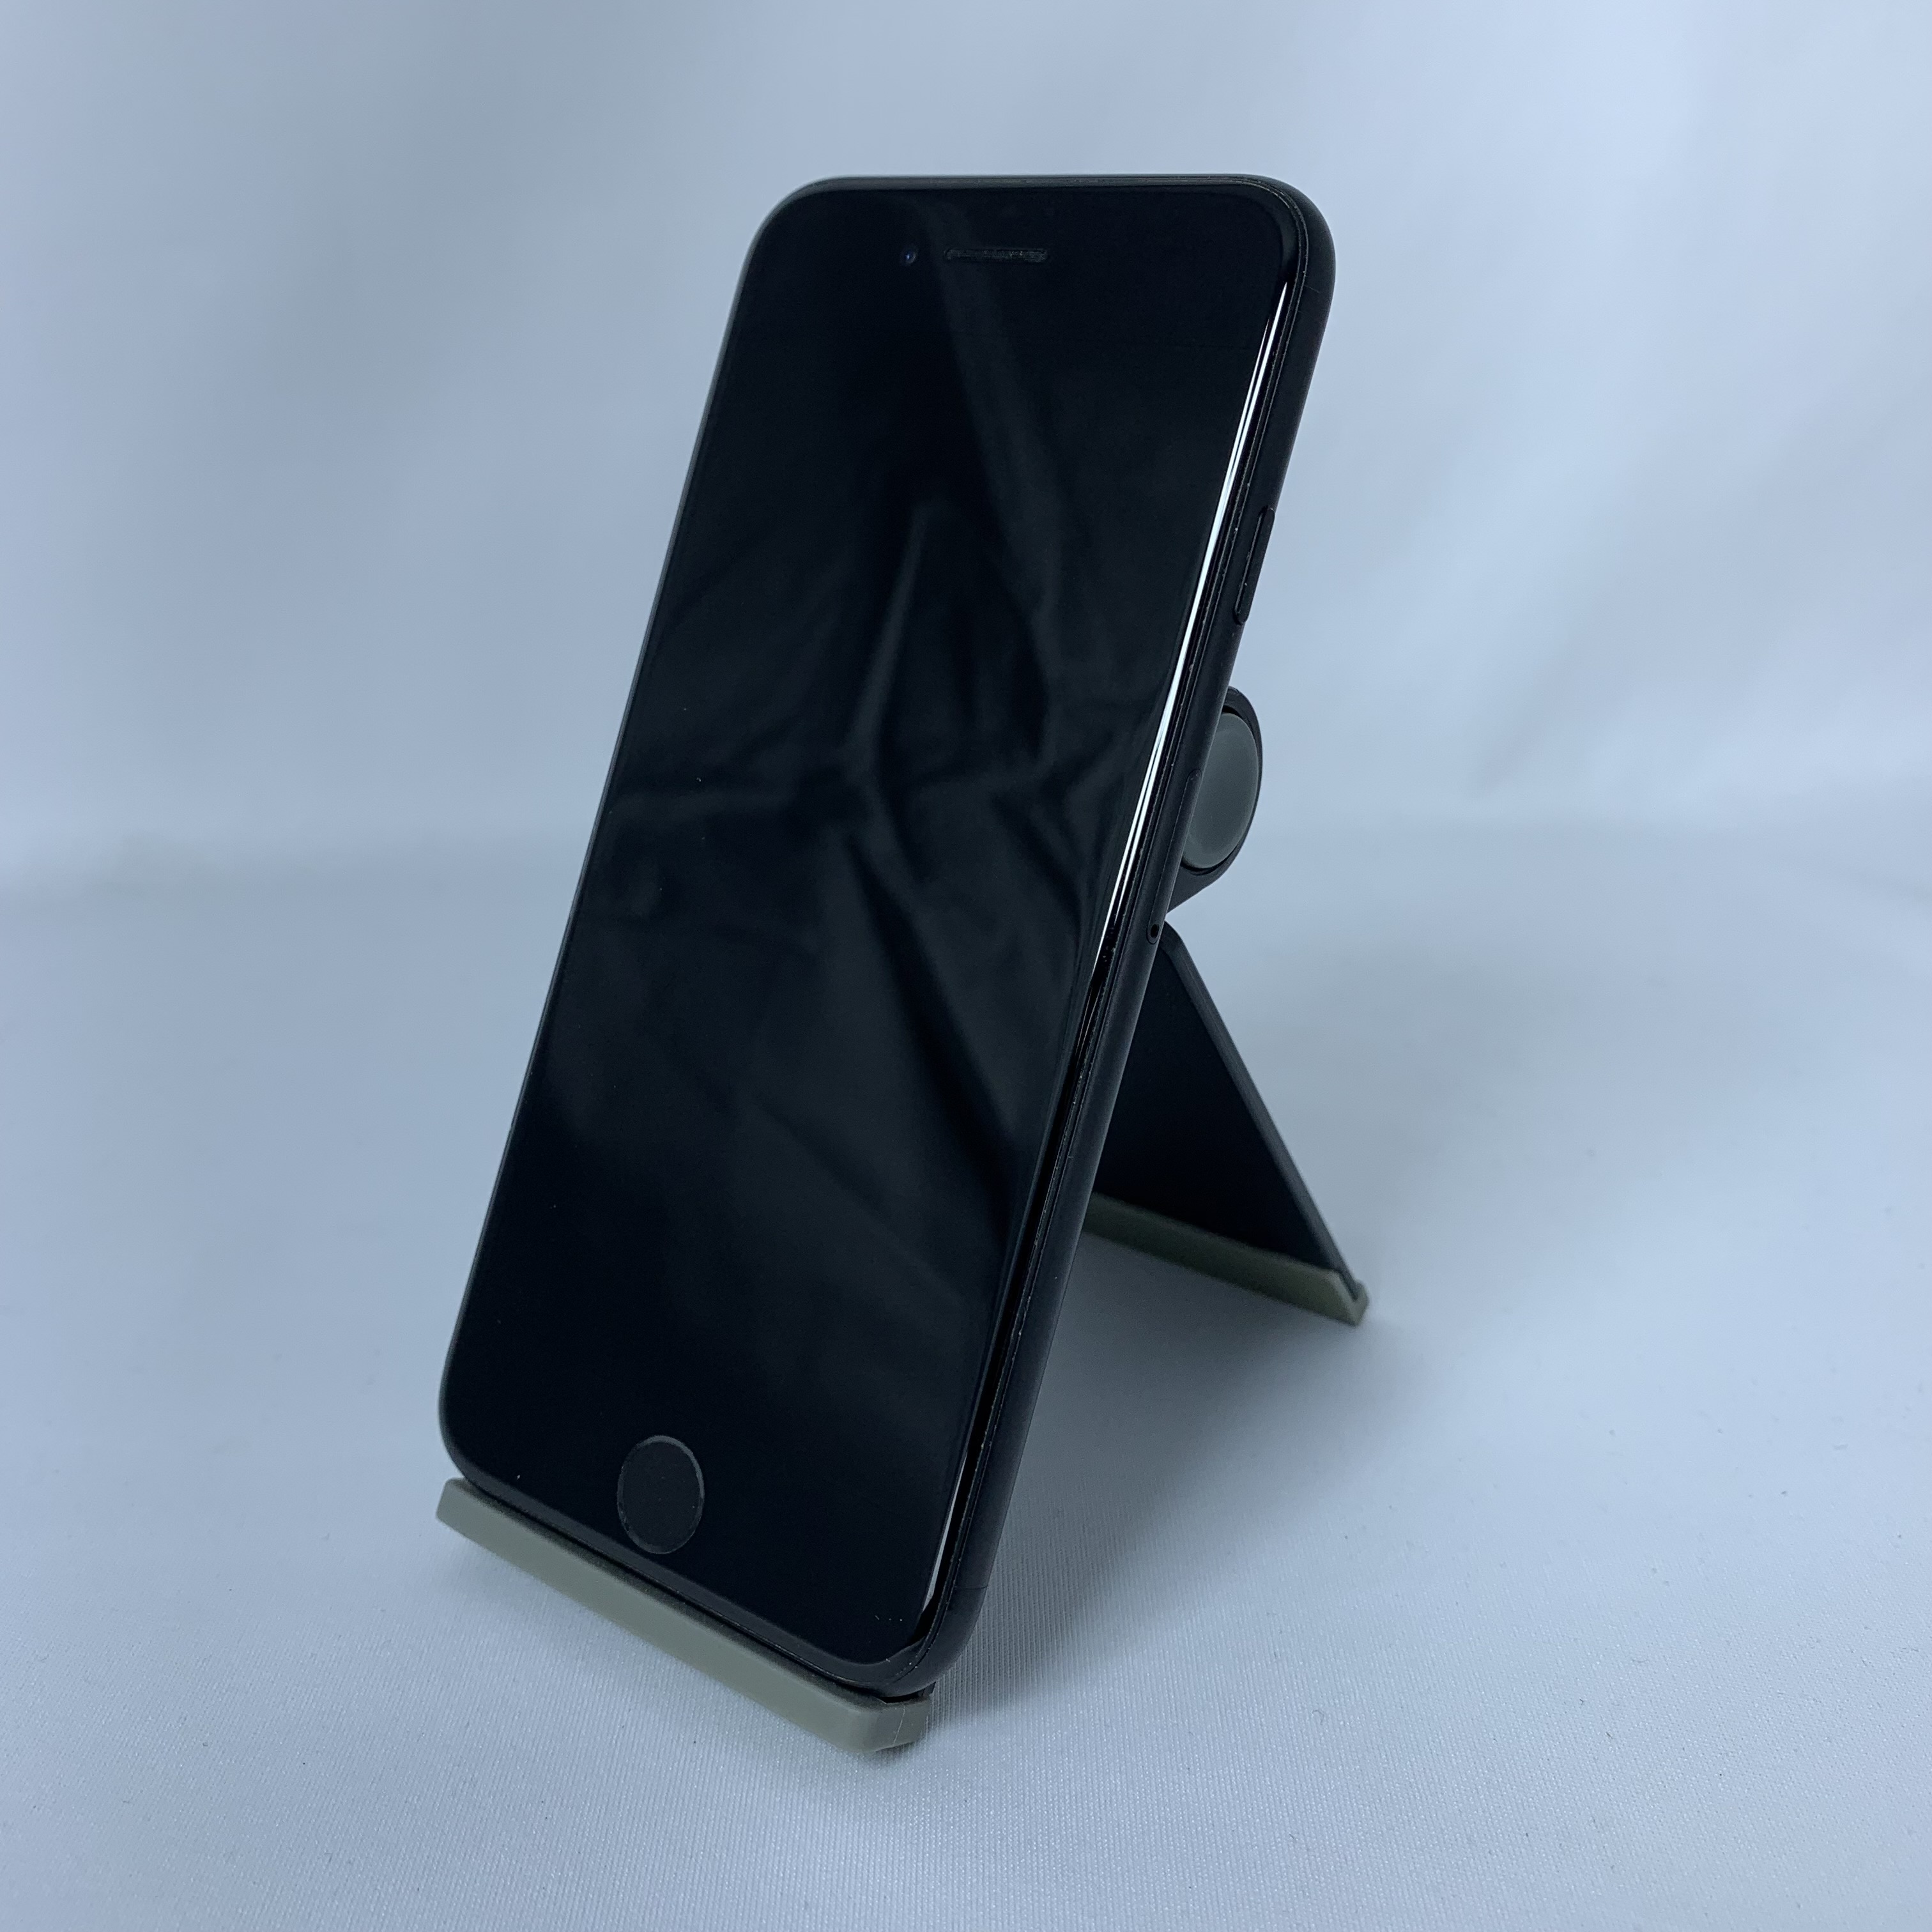 中古】iPhone 7 32GB ブラック (SIMロック解除済)【30日間保証 